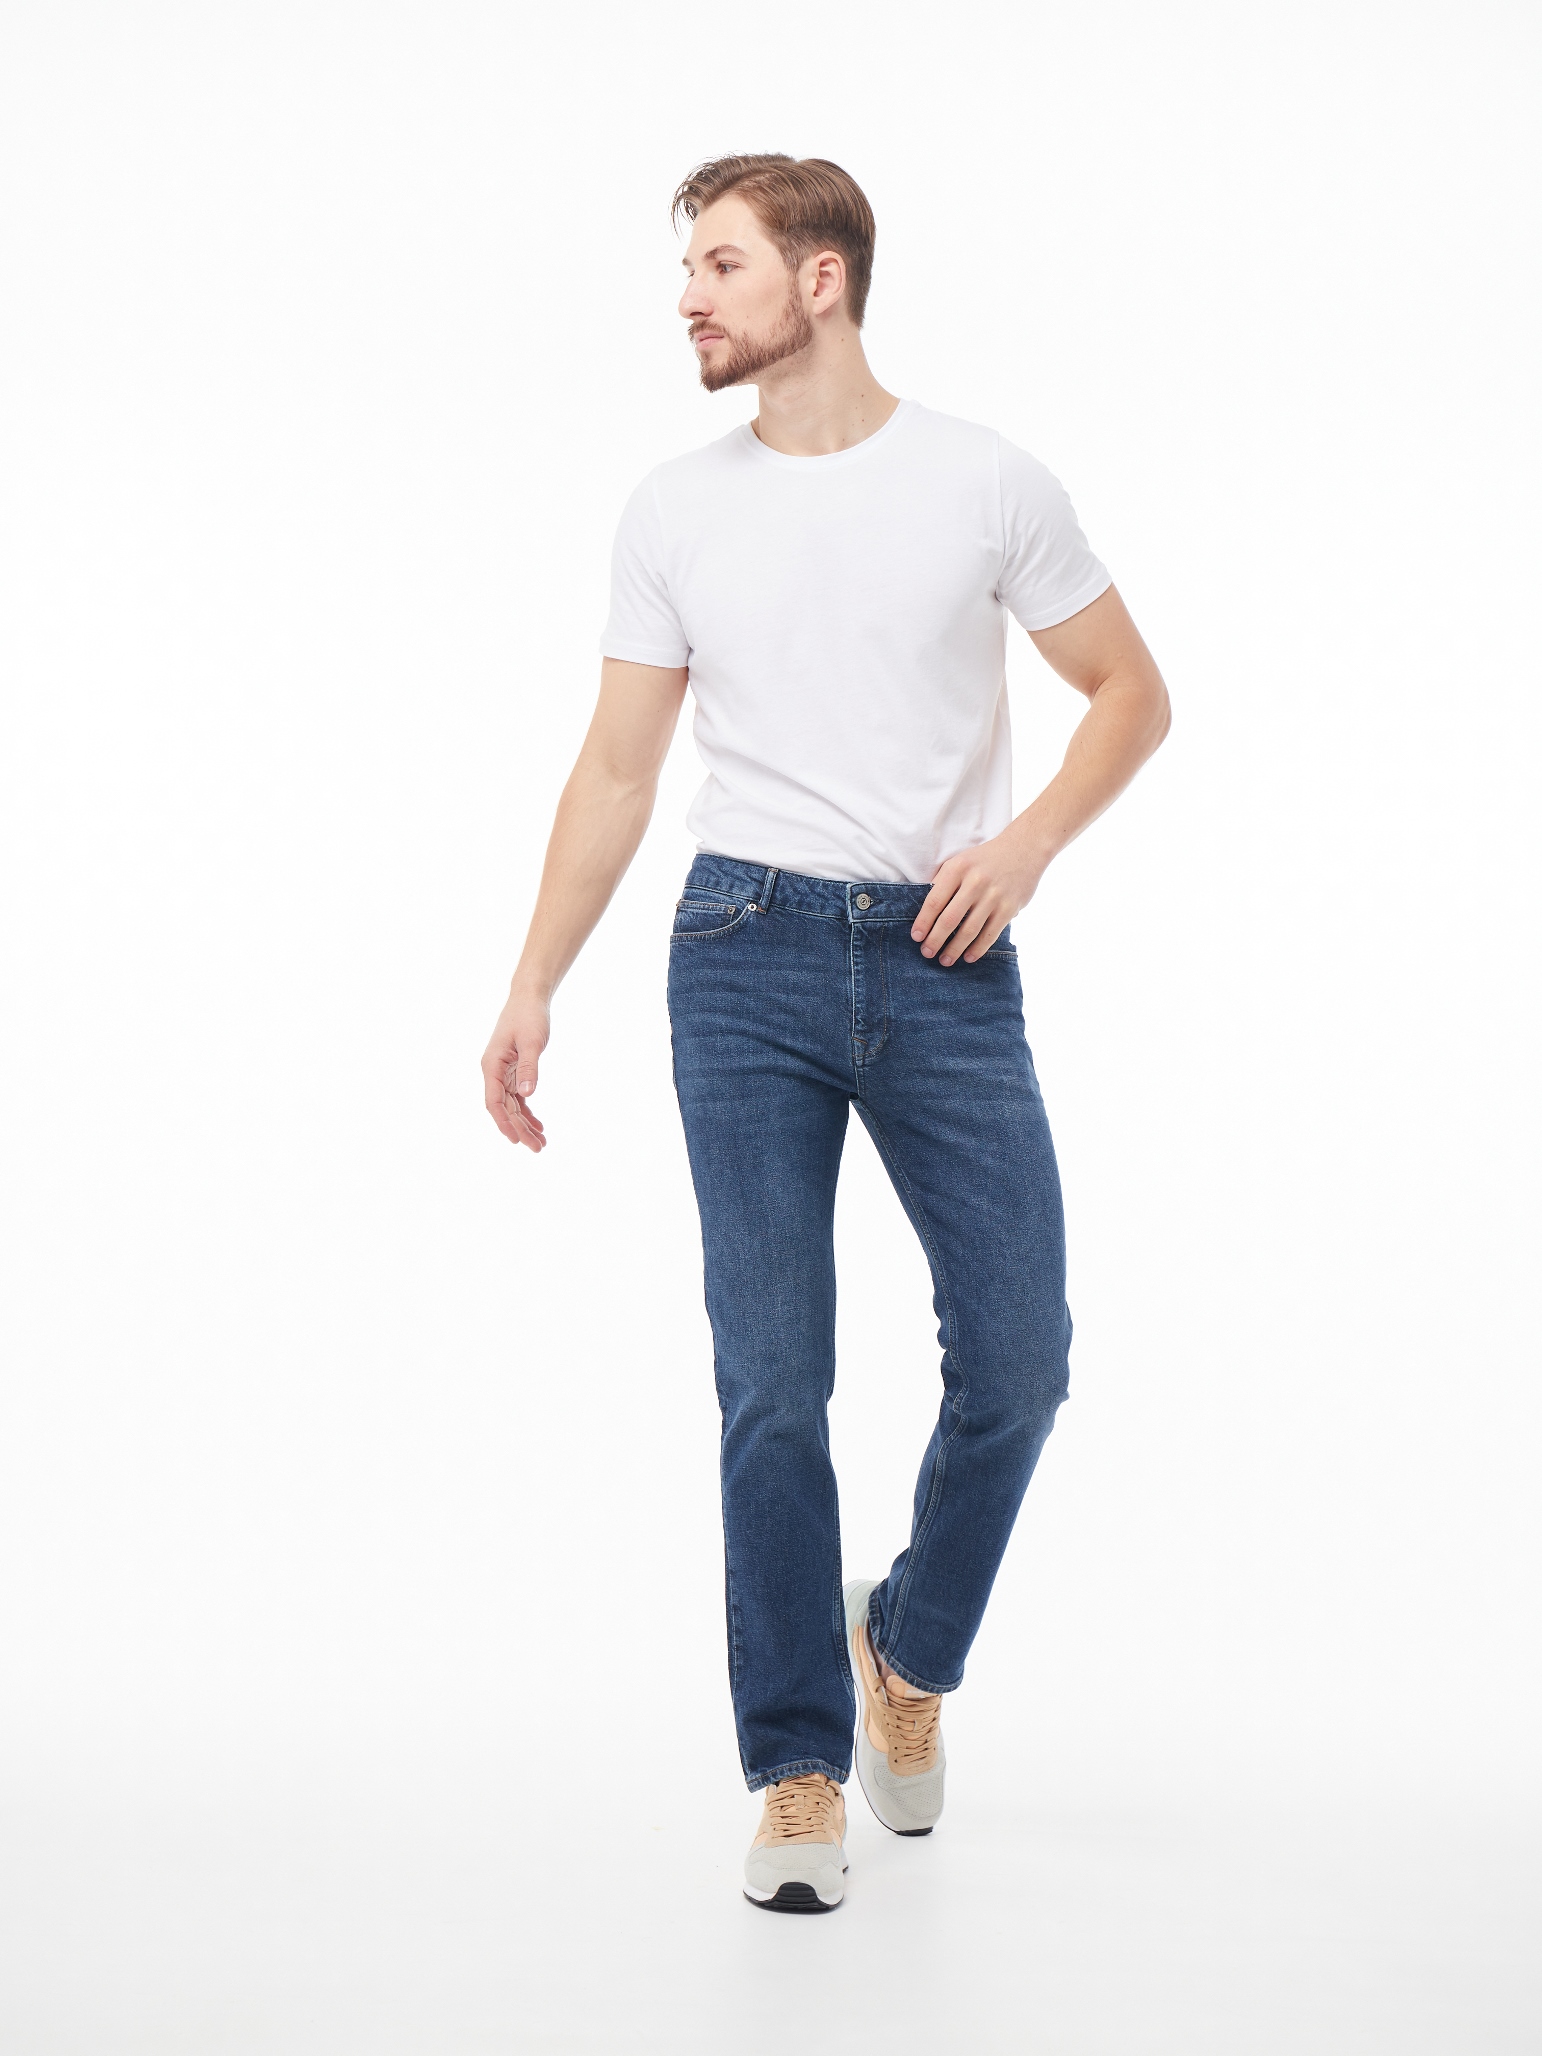 Чоловічі джинси Regular MAGNUS 1096 | Men's jeans Regular MAGNUS 1096